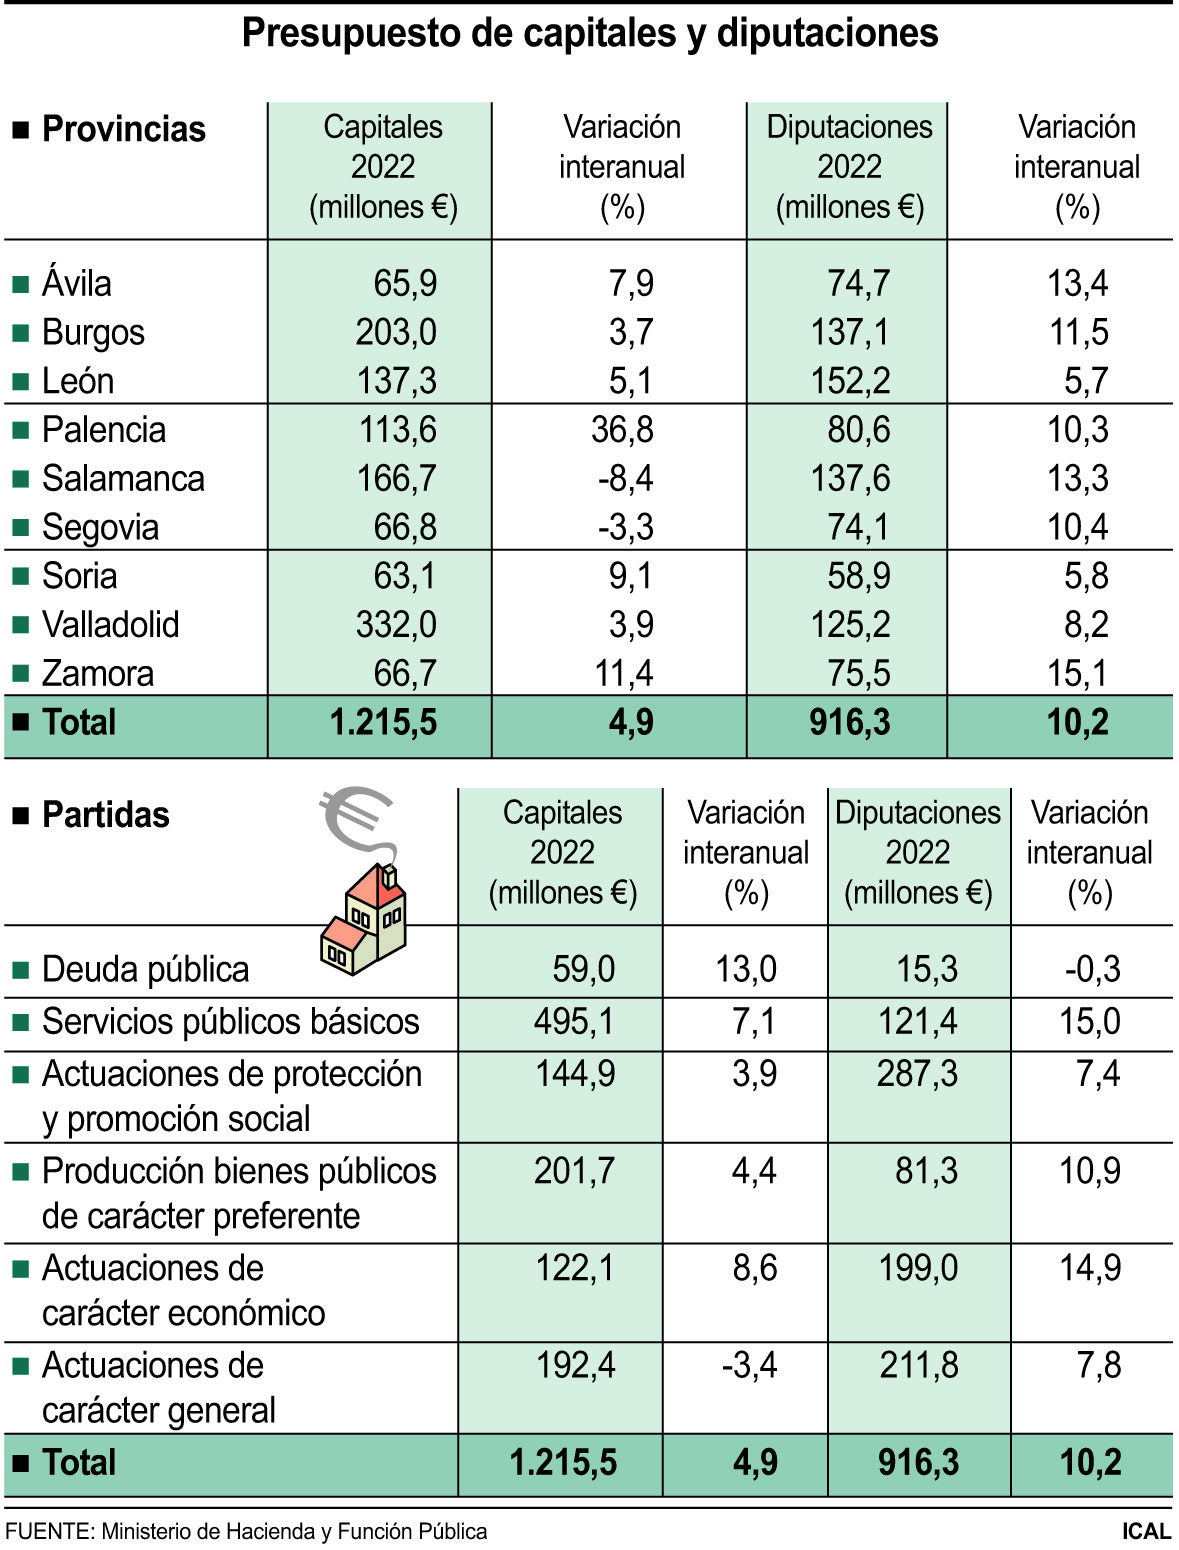 Presupuesto de capitales y diputaciones (10cmx13cm)